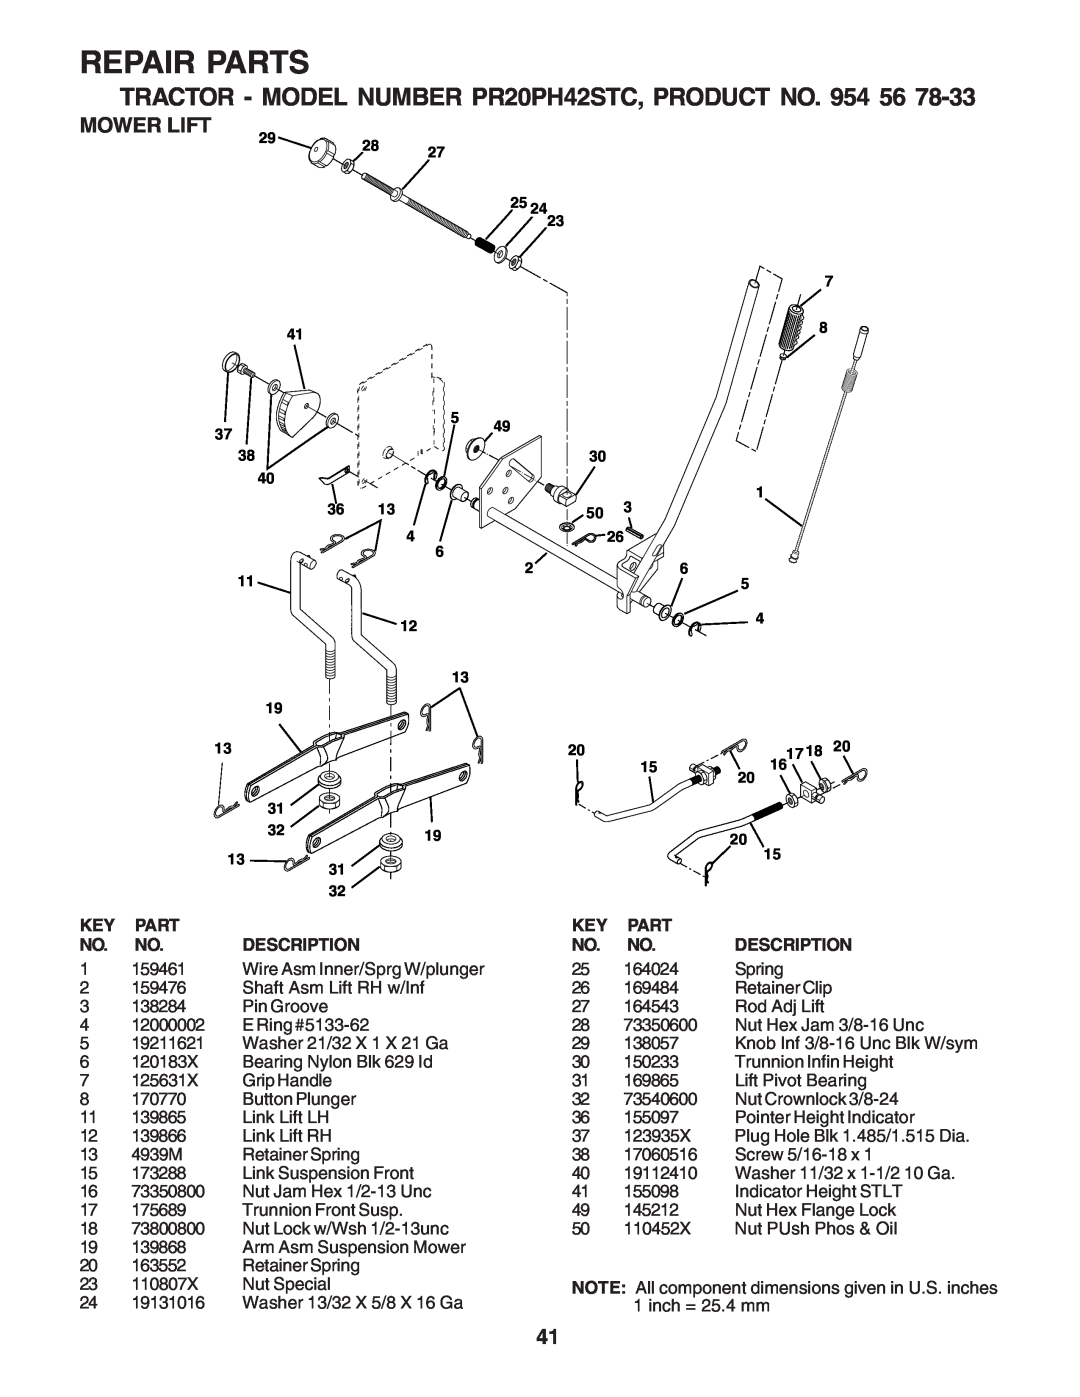 Poulan PR20PH42STC owner manual Mower Lift, Repair Parts, Description 